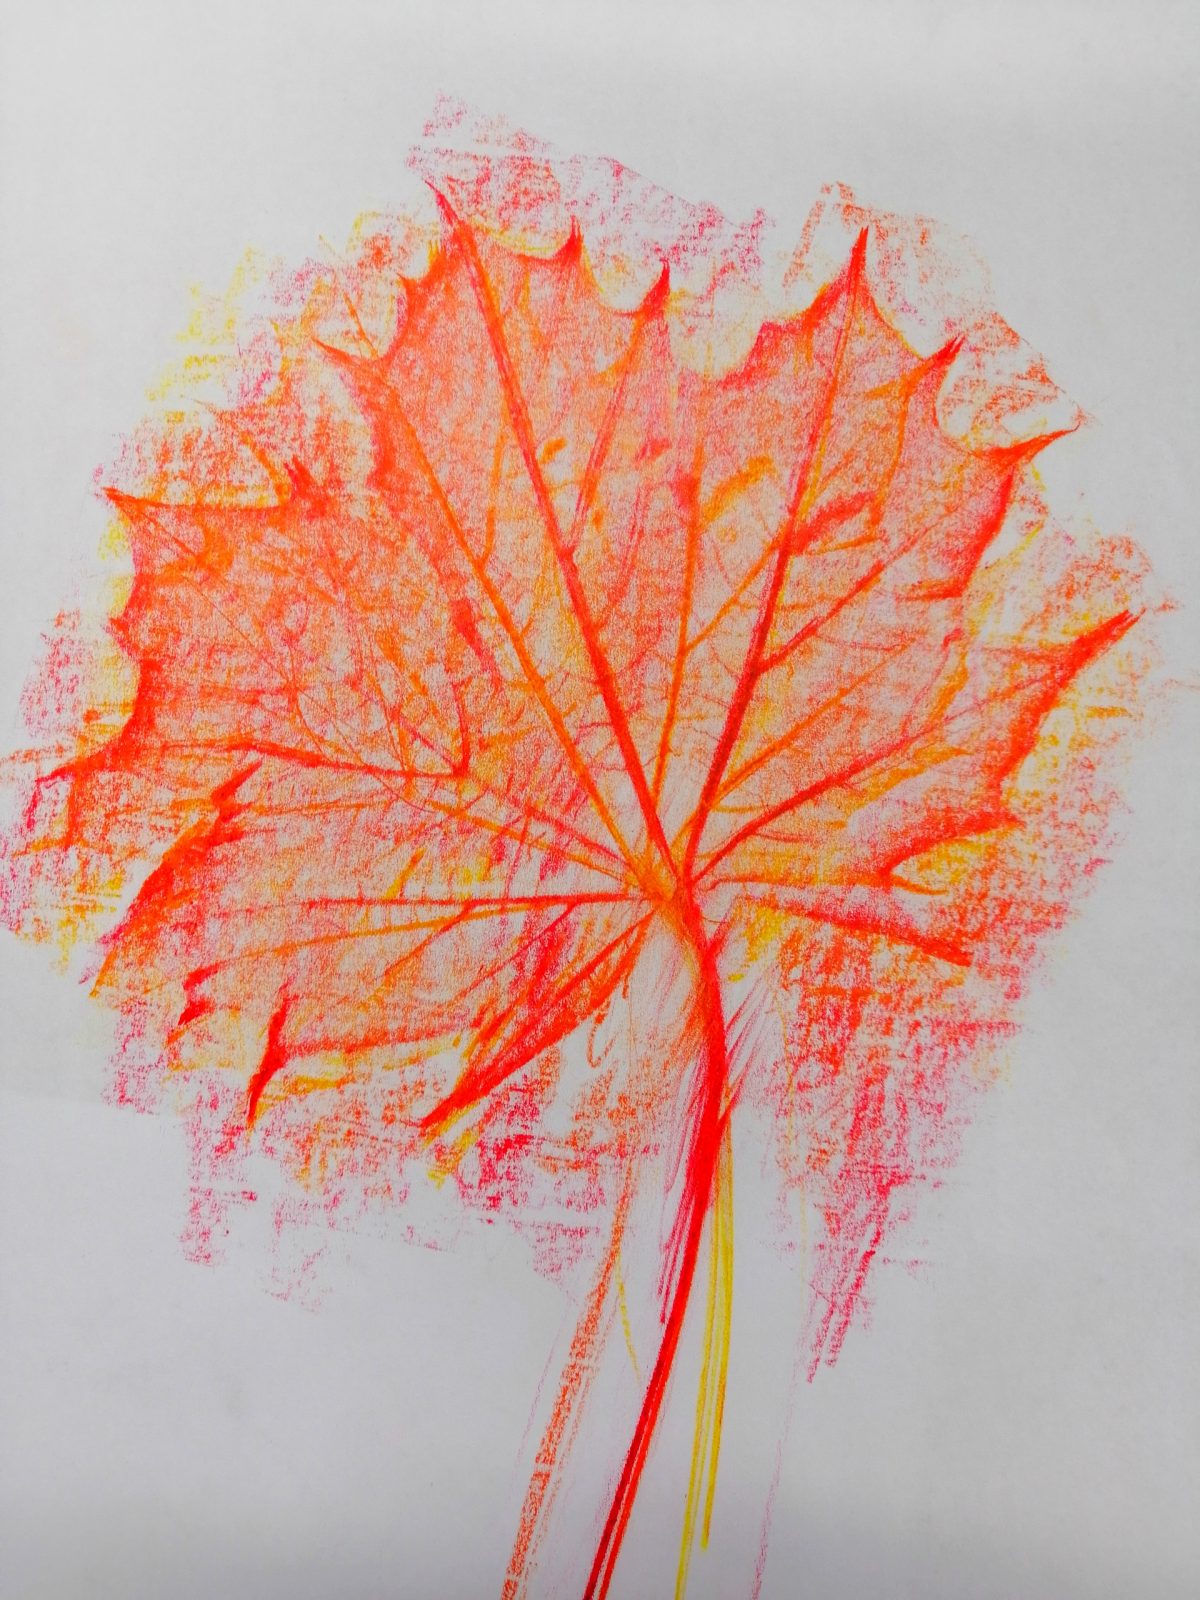 Kompozycja plastyczna struktury jesiennego liścia w układzie centralnym. Praca wykonana w technice frotażu z użyciem barw ciepłych.